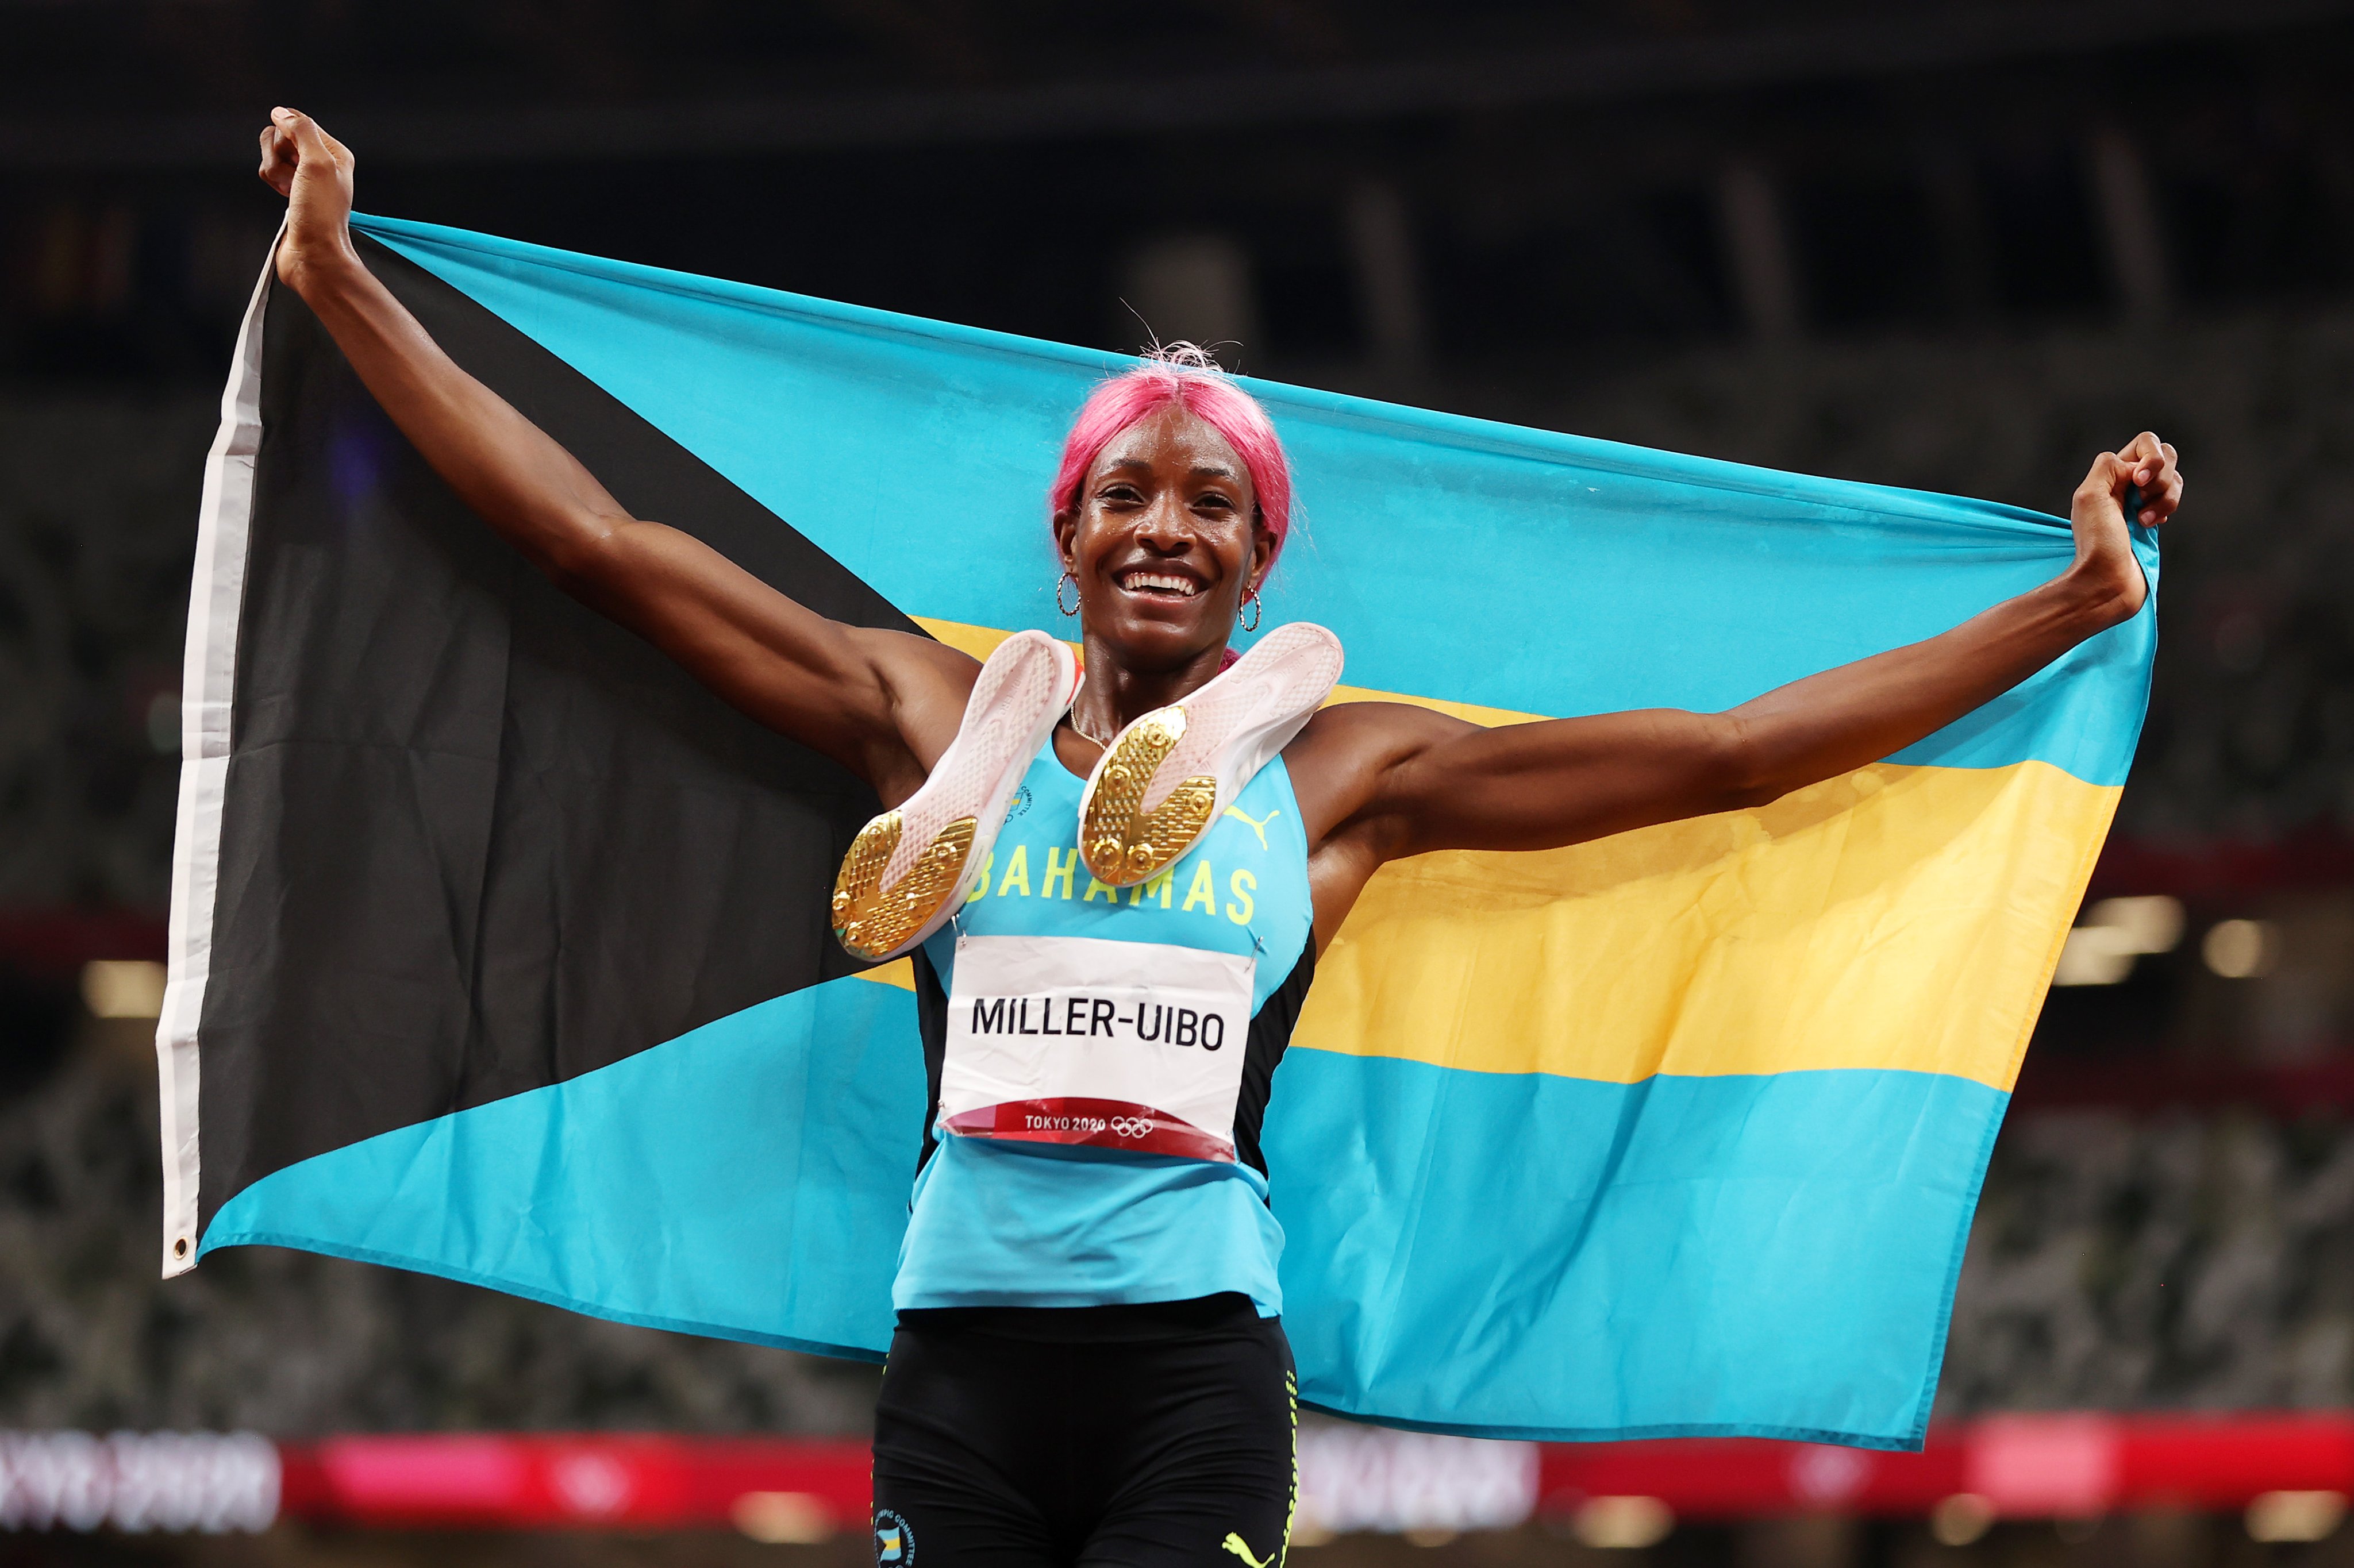 Miller-Uibo ganó el segundo oro para Bahamas, tras vencer en los 400 m de Tokio 2020.